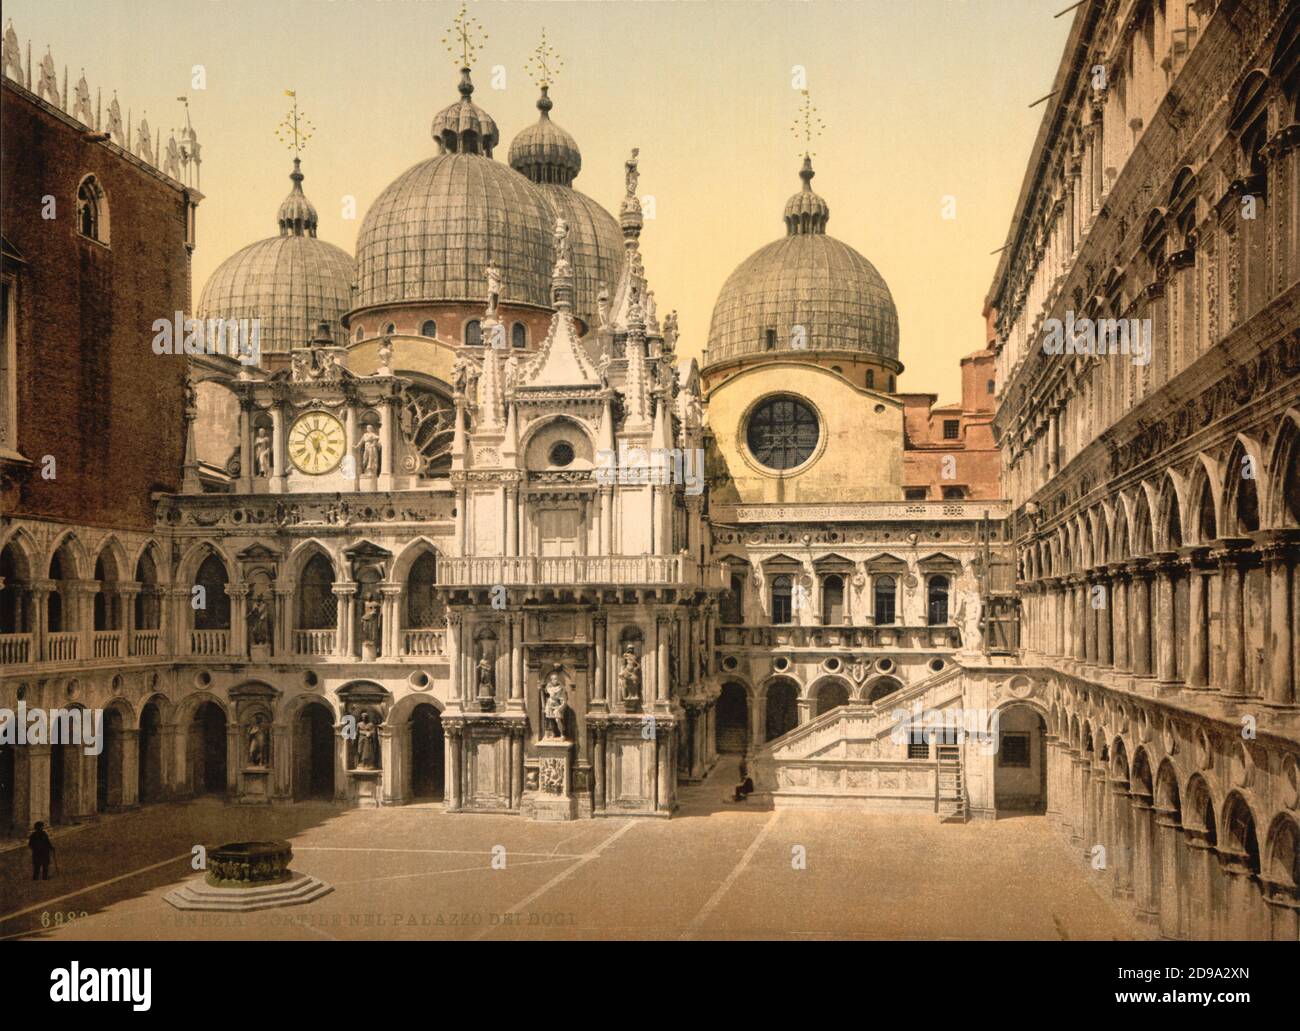 1895 ca. , VENEZIA ,  ITALY : Cortile and Scala dei Giganti ,  PALAZZO DUCALE . Photochrom print colors edited by Detroit Publishing Co.  -  VENICE - VENETO -  ITALIA - FOTO STORICHE - HISTORY - GEOGRAFIA - GEOGRAPHY  - ARCHITETTURA - ARCHITECTURE  -     - ARTS - ARTE - OTTOCENTO - 800's - '800 - VENETO - SAN MARCO    ----  Archivio GBB Stock Photo